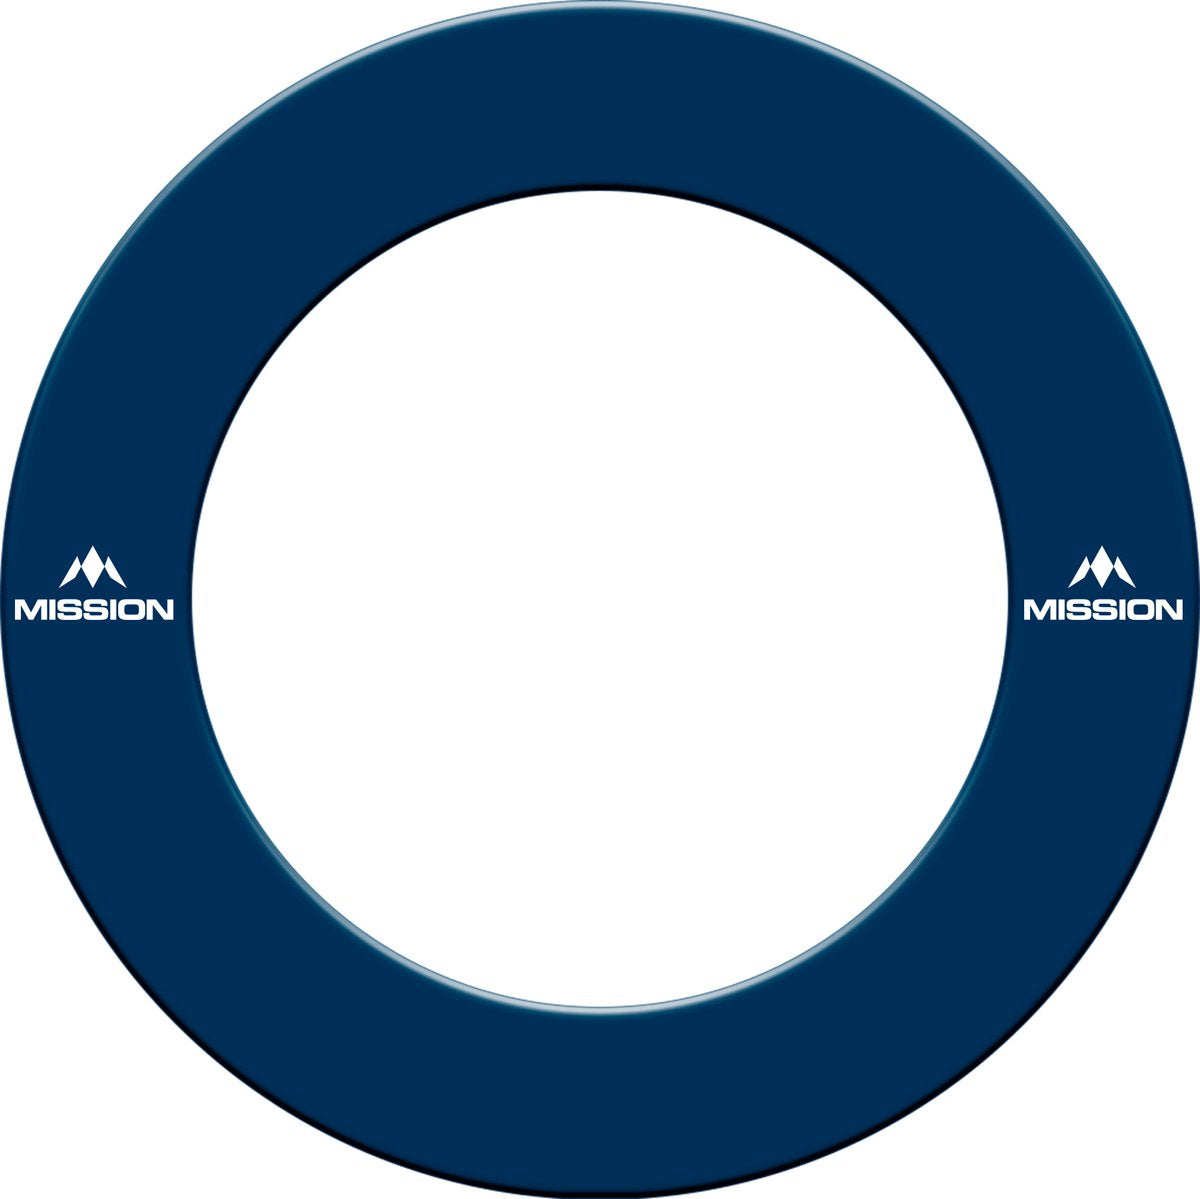 Mission Dartbord Surround Blauw met logo  - Dartpijlen - DartsCorner.shop - Darts Corner - Darts Producten - Darts